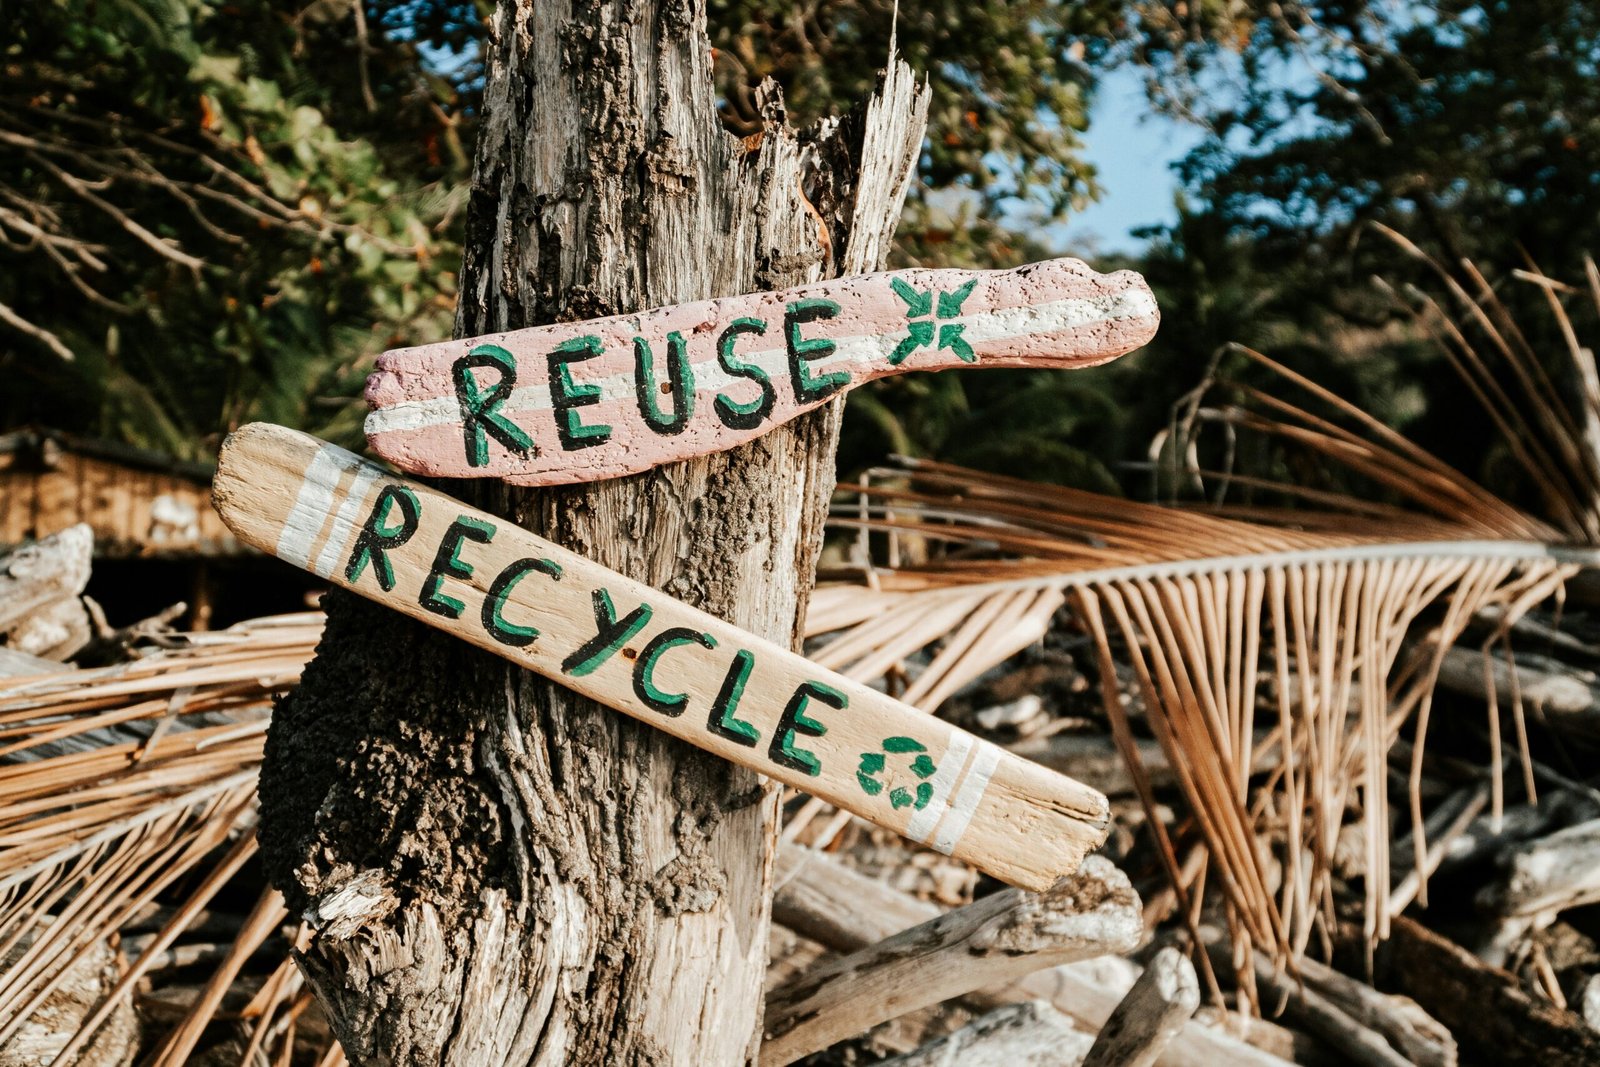 panneau en bois marqués "reuse" et "recycle"